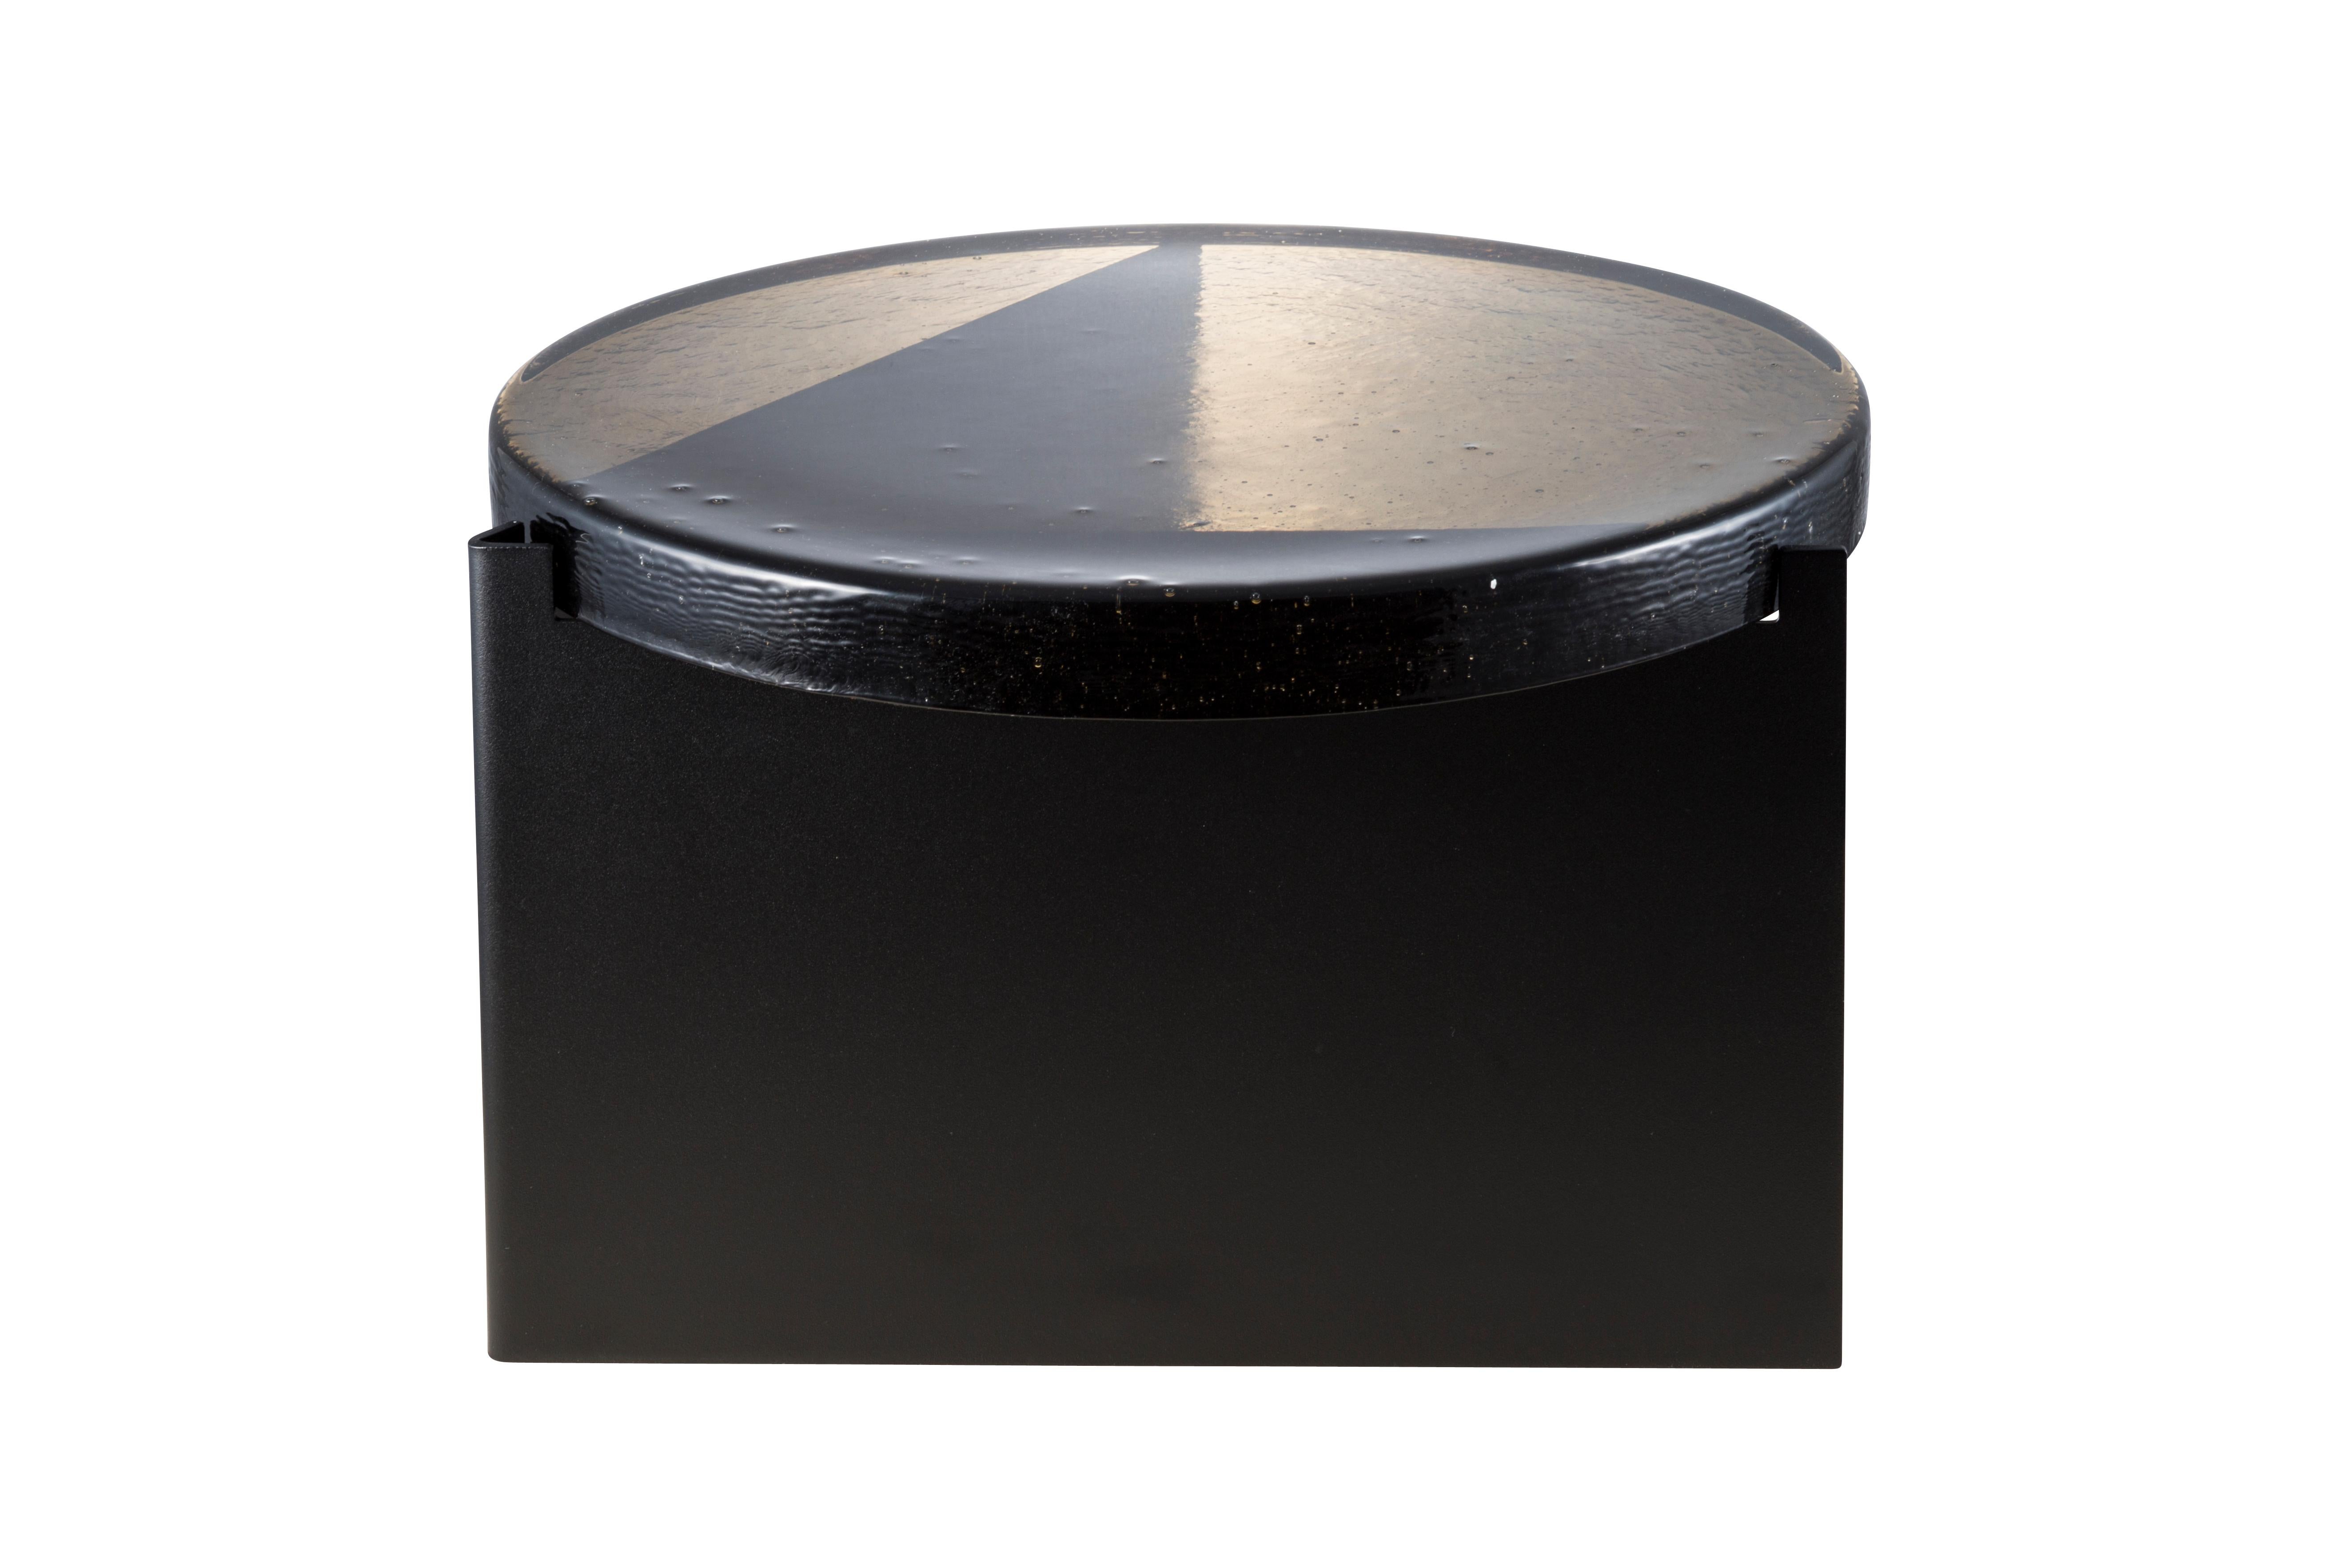 Table basse Alwa one big smoky grey black par Pulpo.
Dimensions : D56 x H35 cm.
MATERIAL : Verre moulé ; acier peint par poudrage.

Disponible également en différentes finitions. 

Normalement, le verre est considéré comme un matériau léger